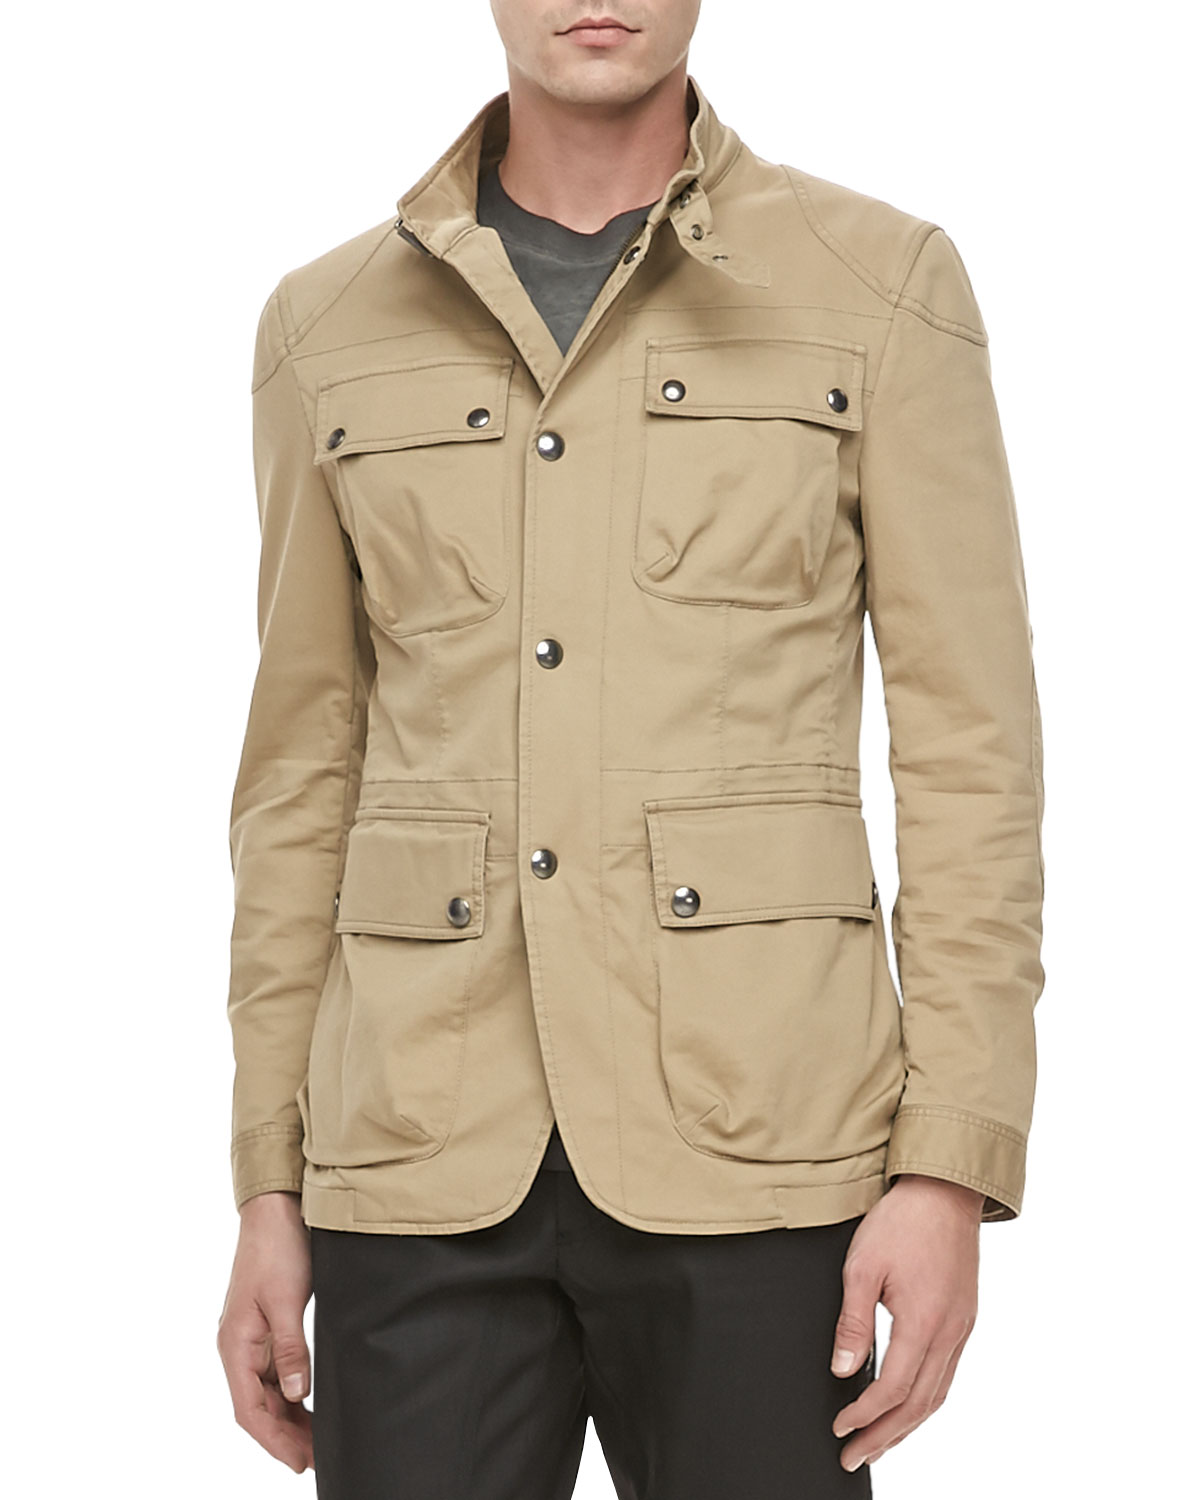 Belstaff Atworth Safari Jacket in Tan (Natural) for Men - Lyst